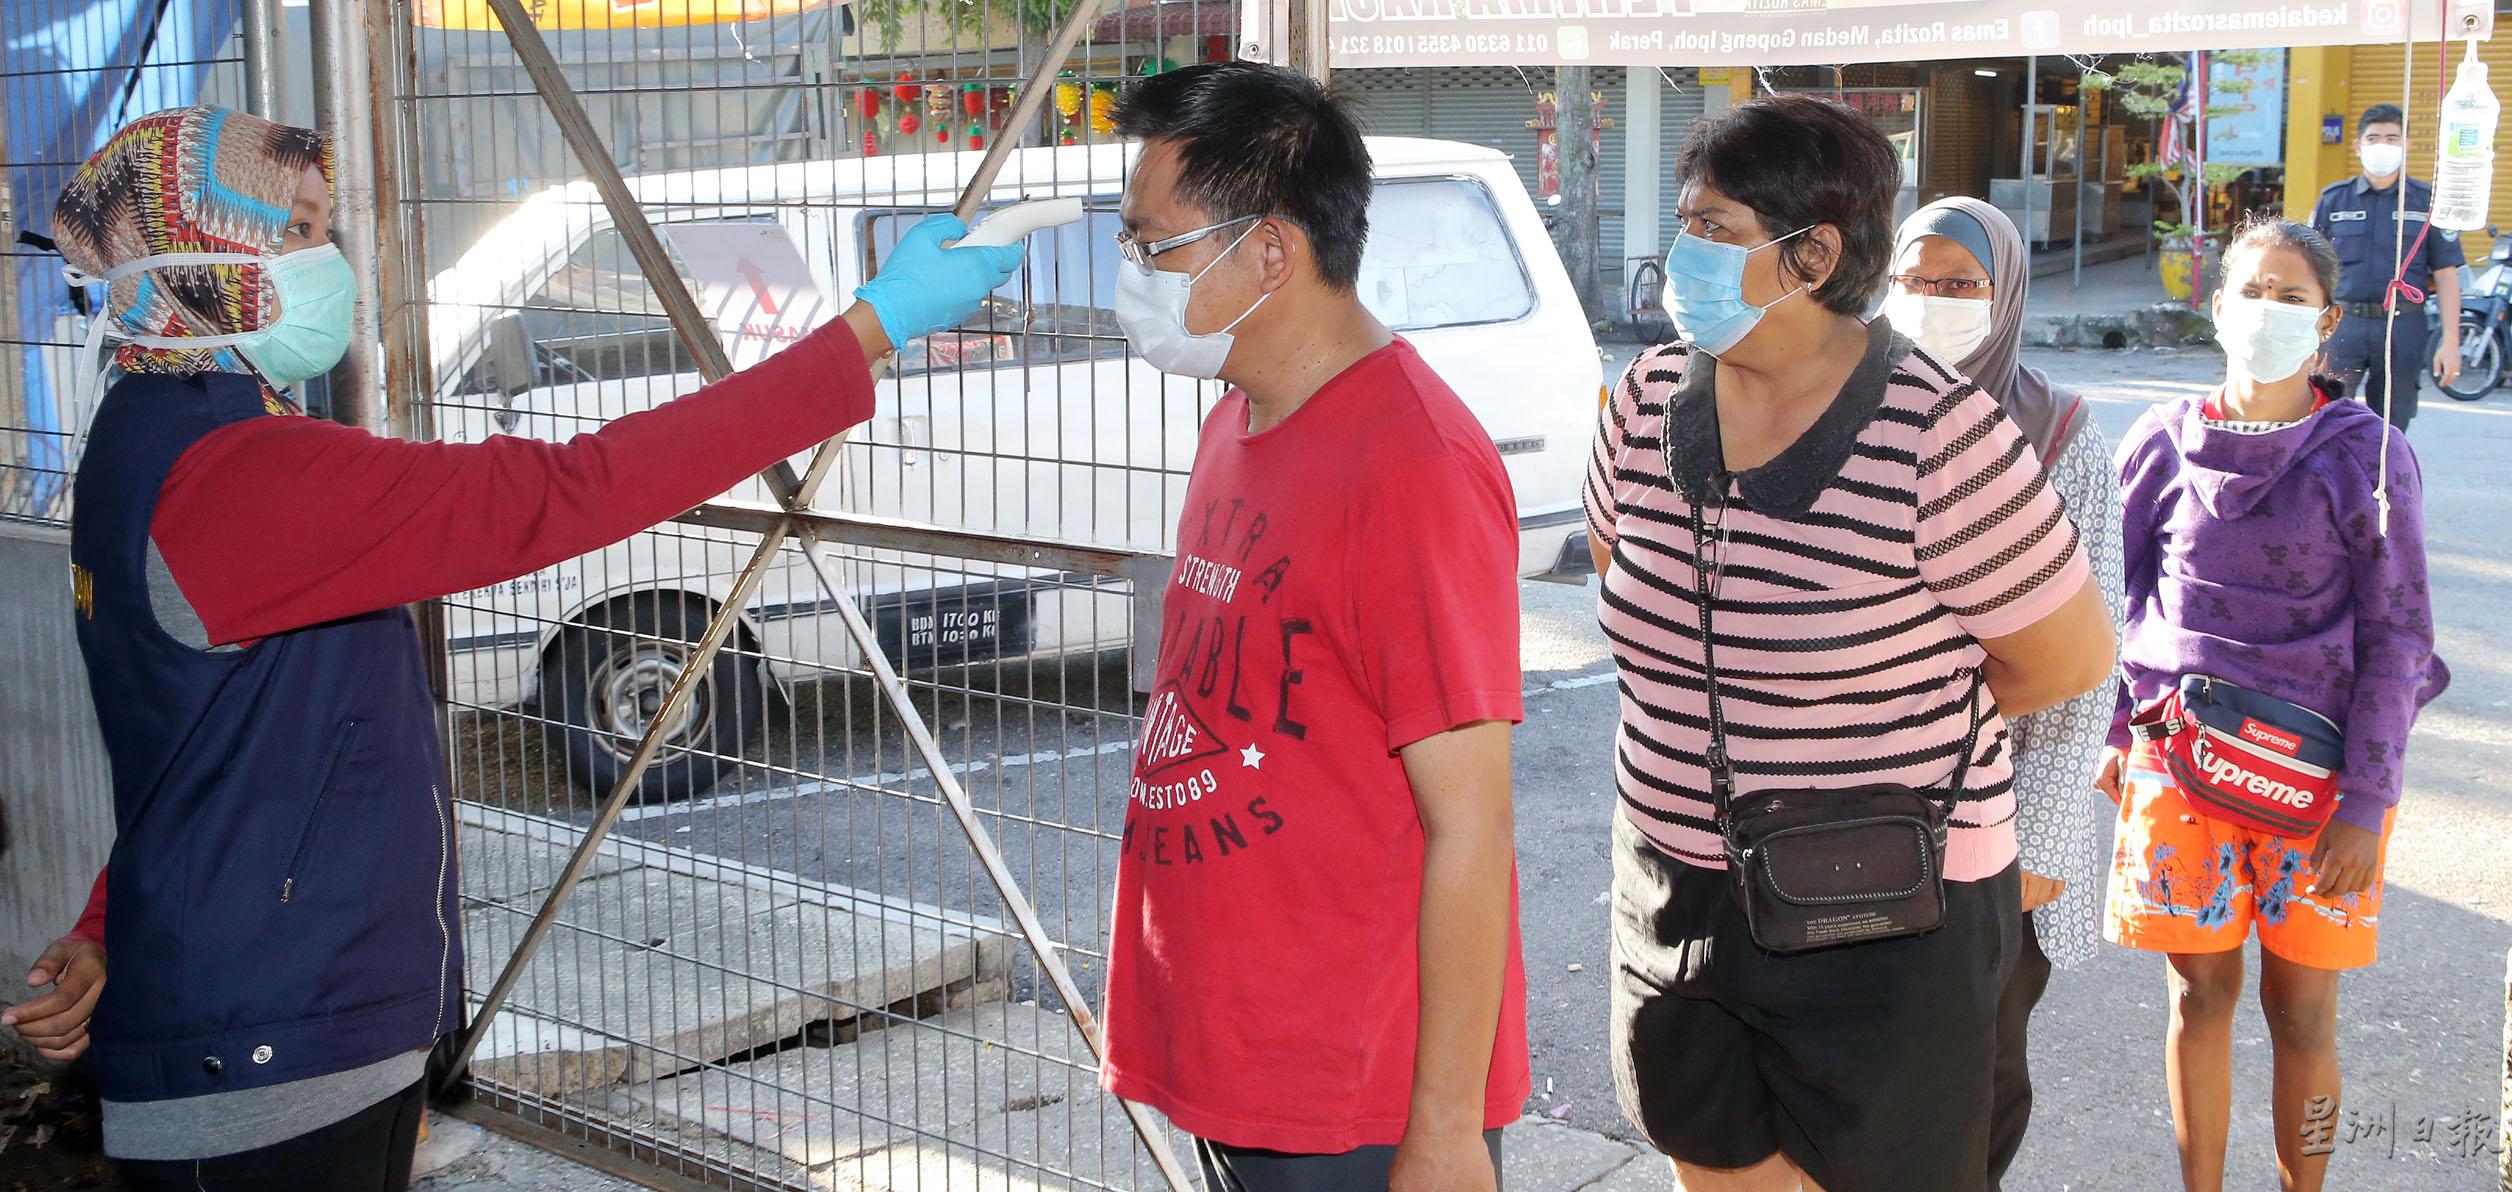 怡保市政厅官员为进入巴刹的民众测量体温。

